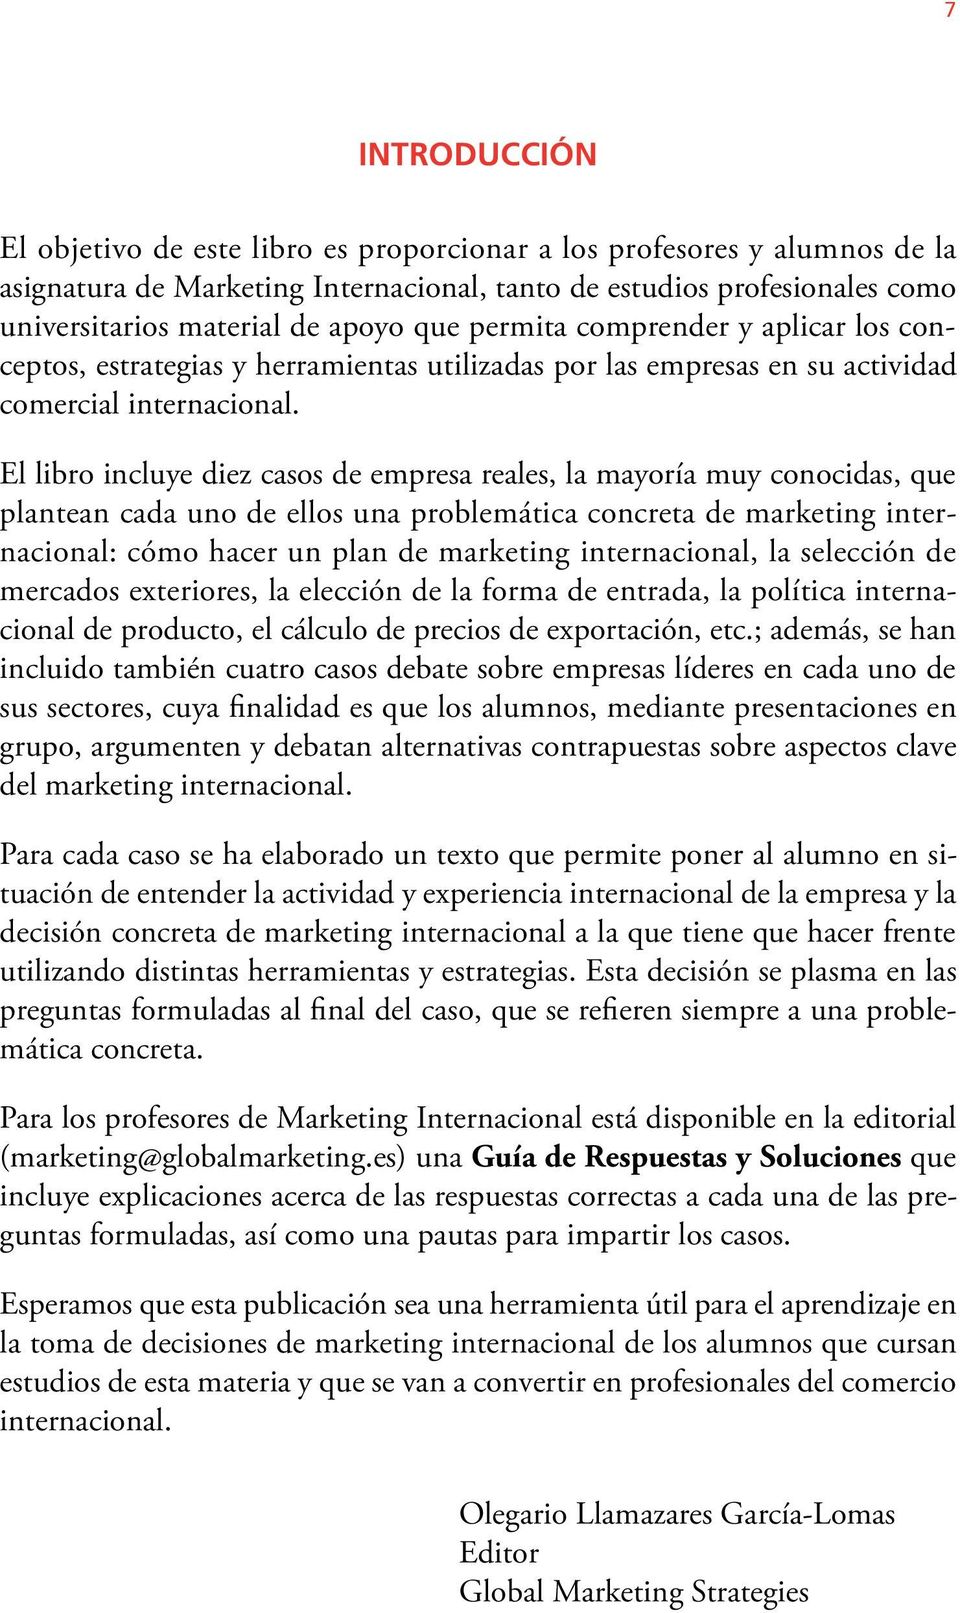 El libro incluye diez casos de empresa reales, la mayoría muy conocidas, que plantean cada uno de ellos una problemática concreta de marketing internacional: cómo hacer un plan de marketing